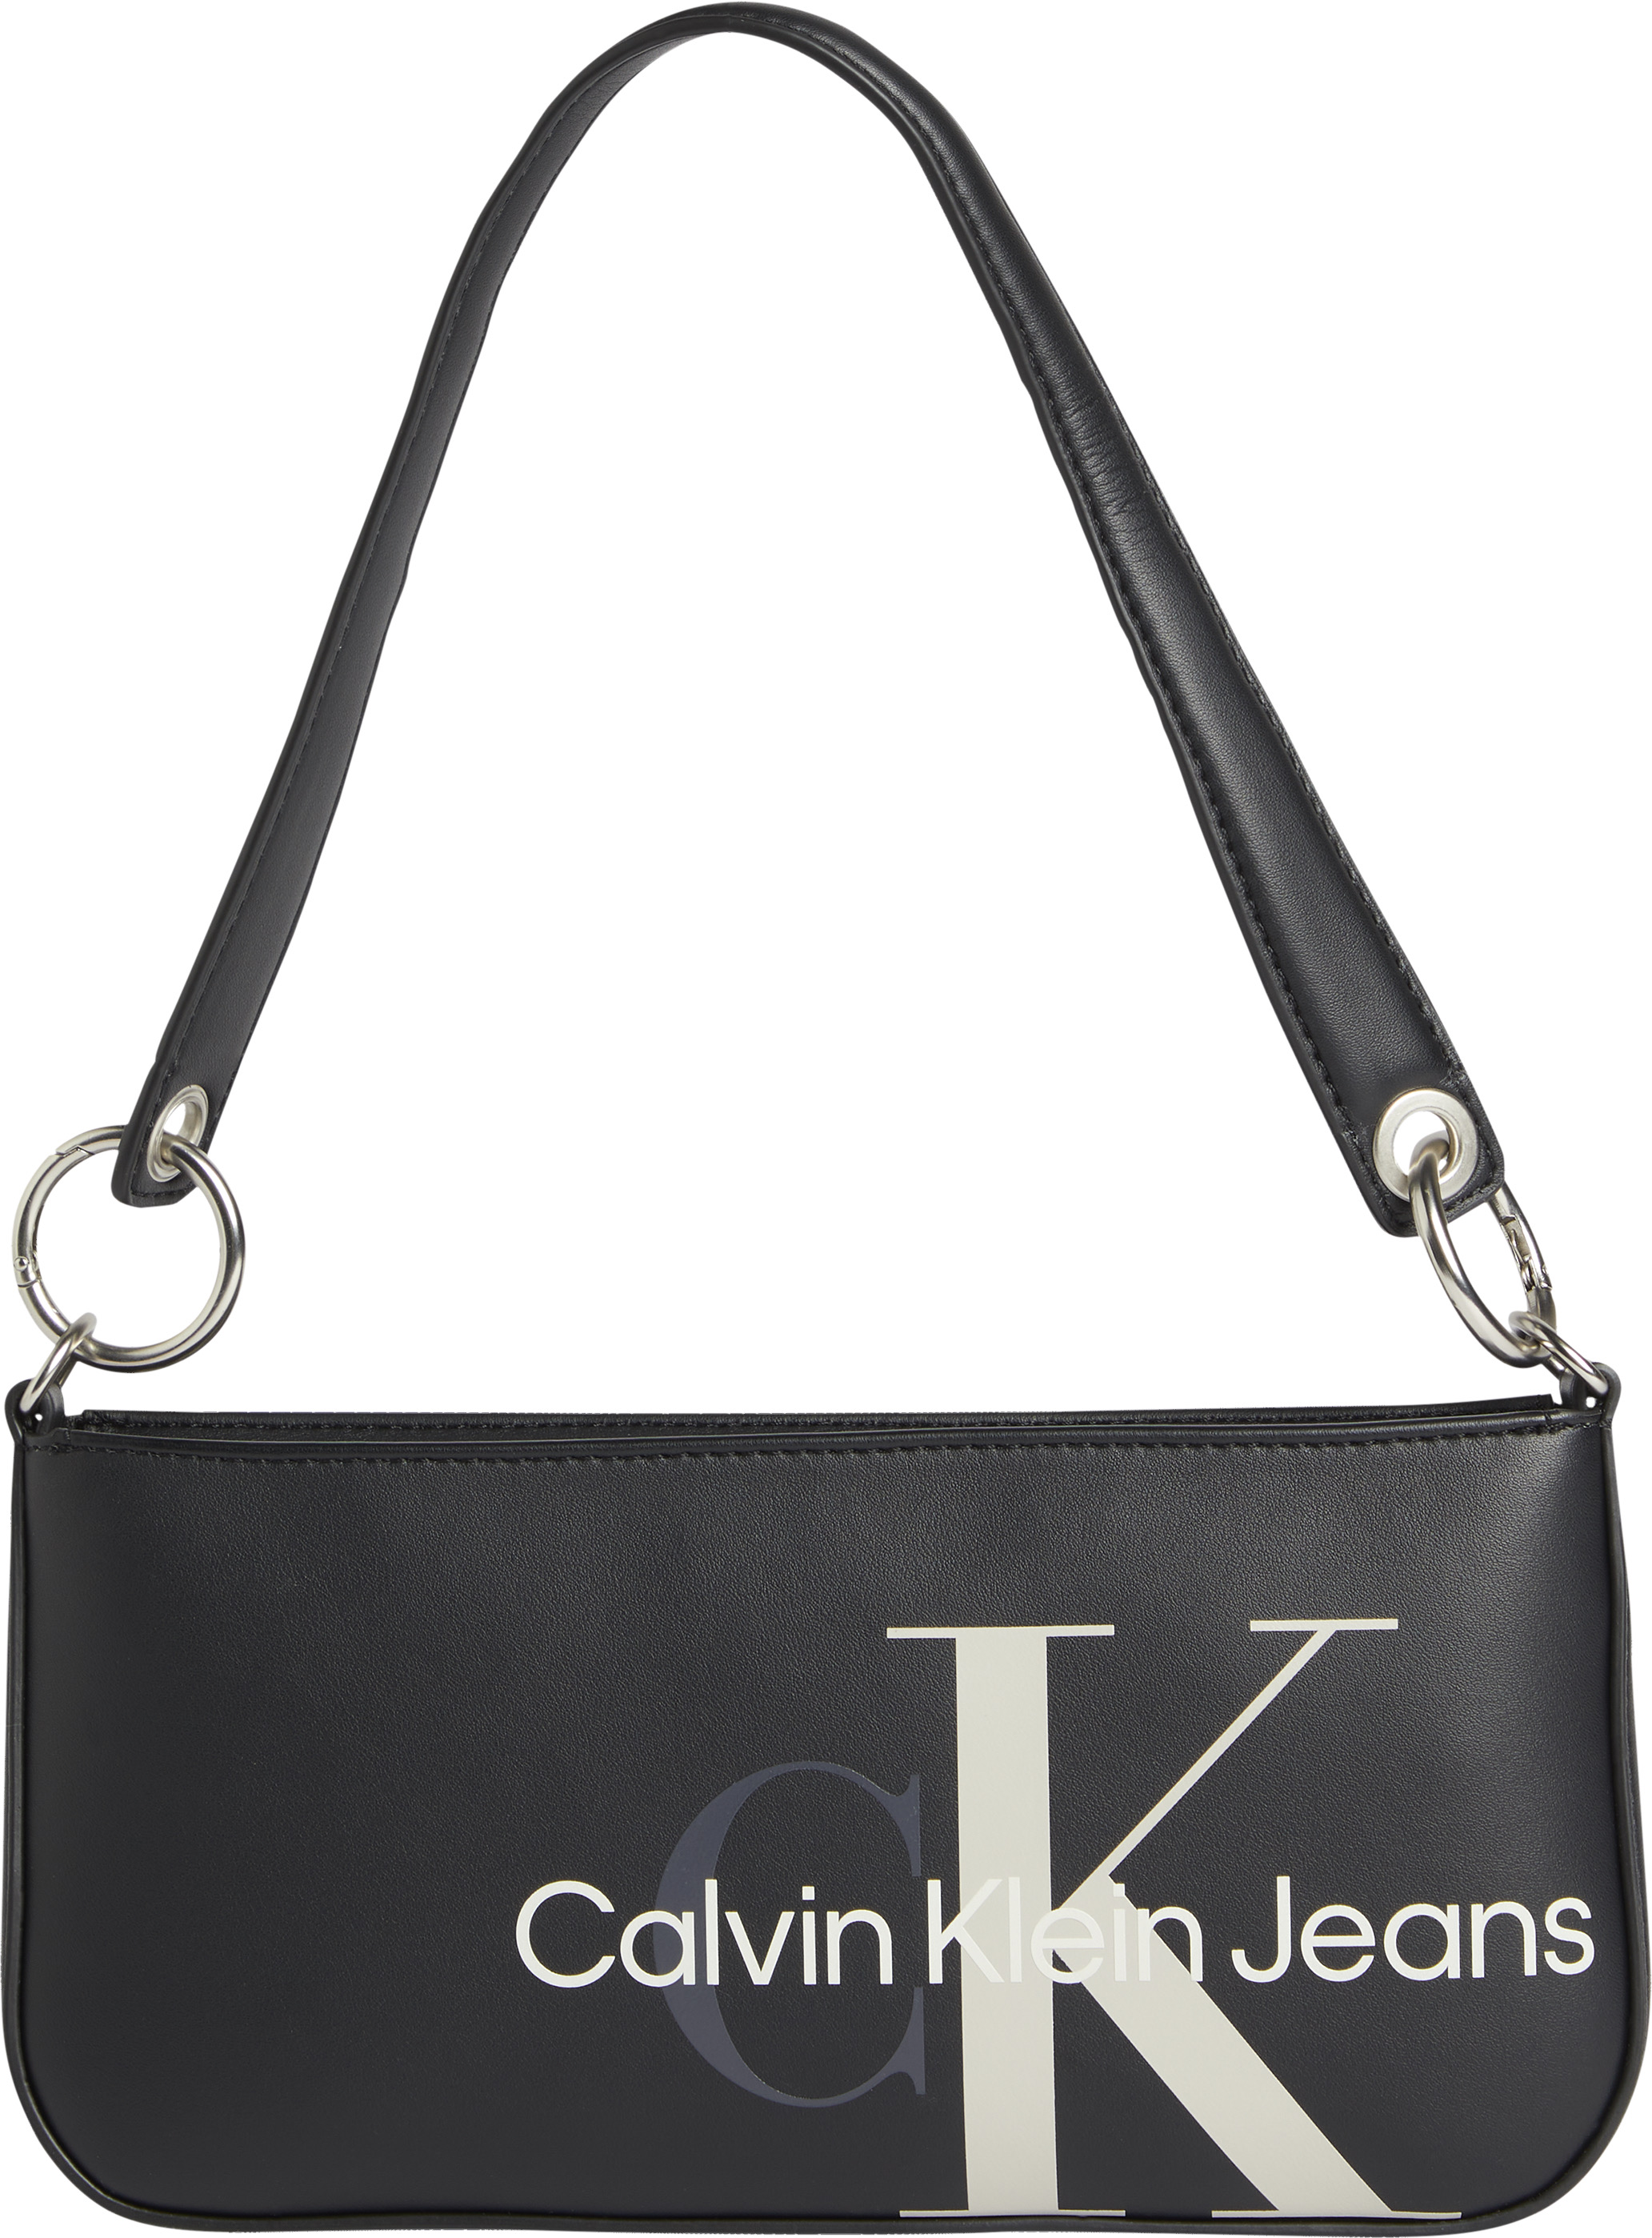 Accessori Donna Calvin Klein Jeans Borsa a spalla in Nero 